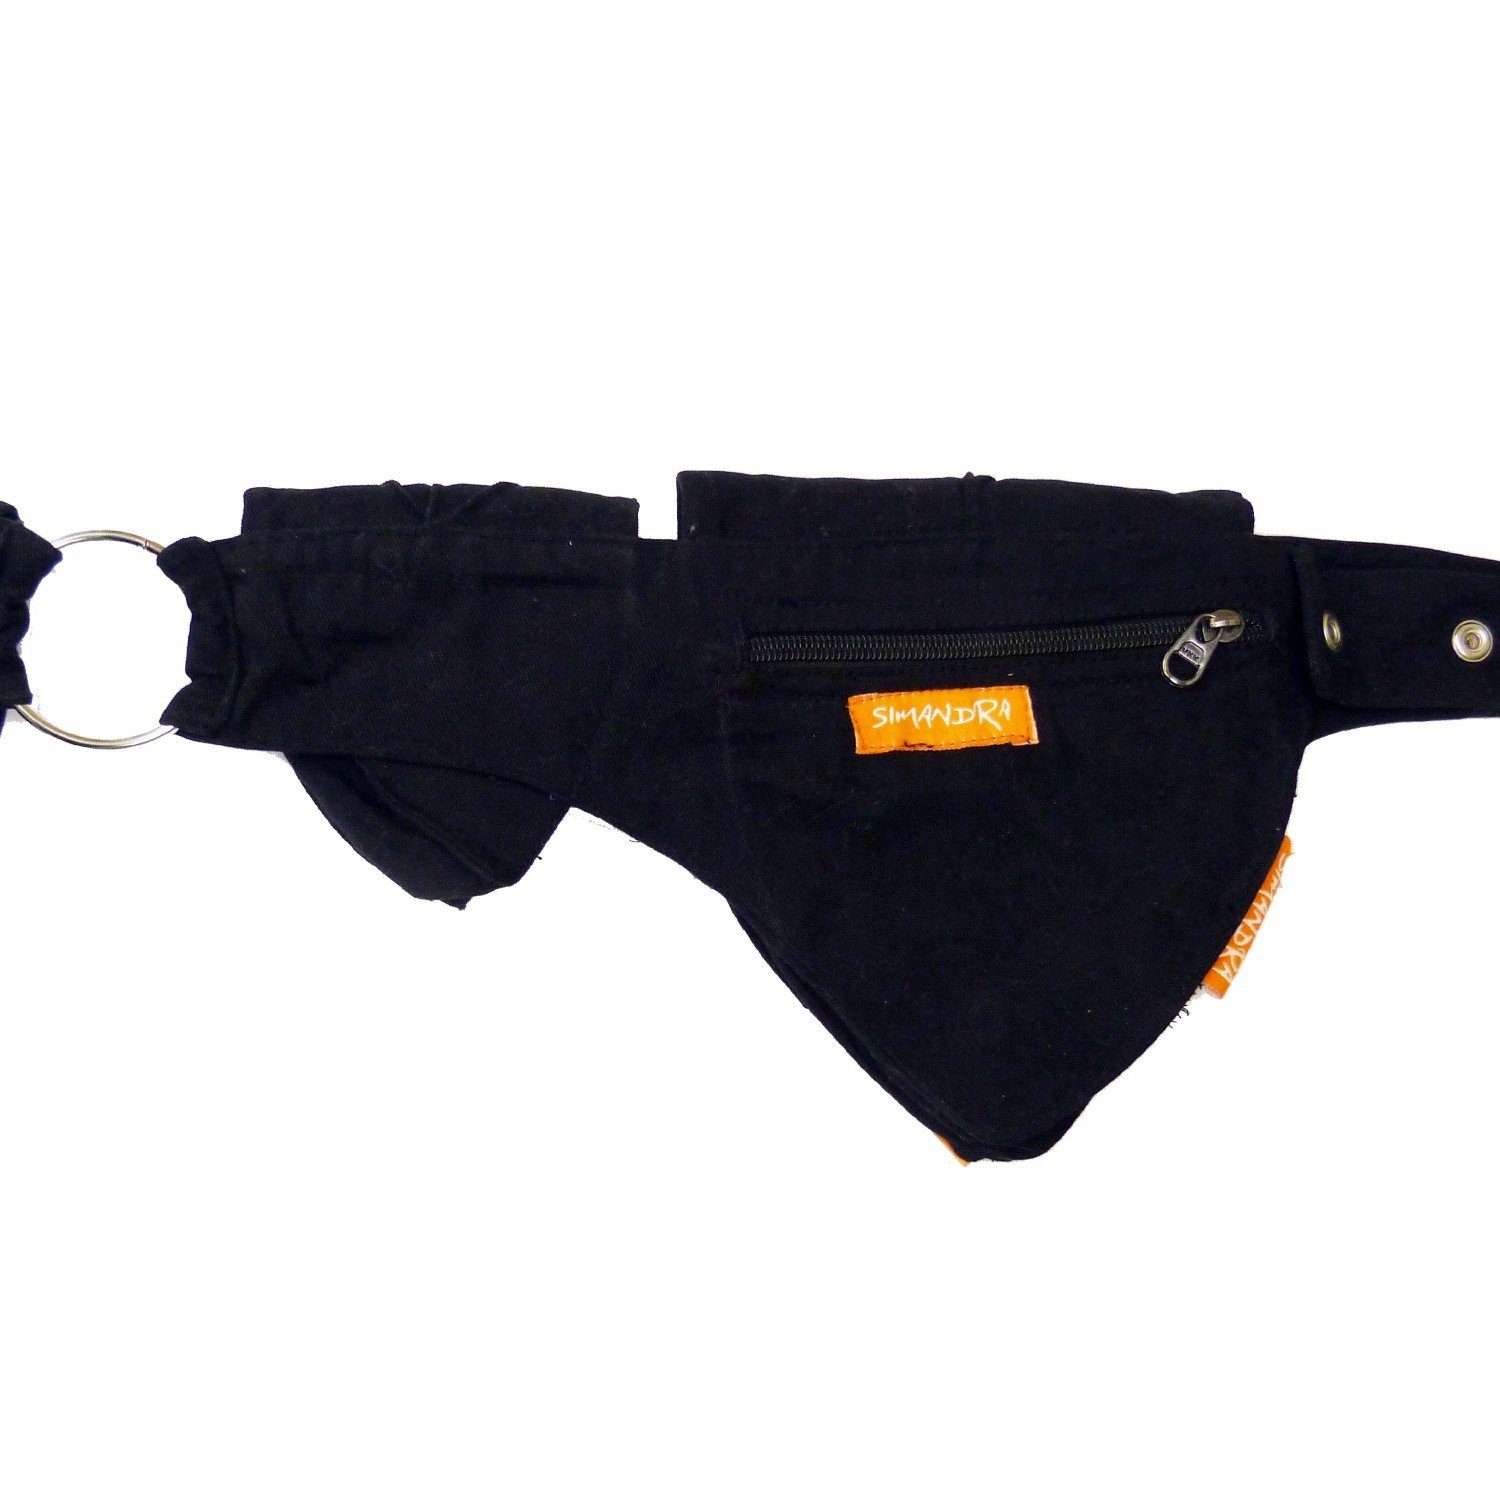 individuell verstellbar Druckknopf Hüfttasche Taschen Gürteltasche Schwarz mit Bauchtasche Reißverschluss + I 4 + SIMANDRA Blatt,